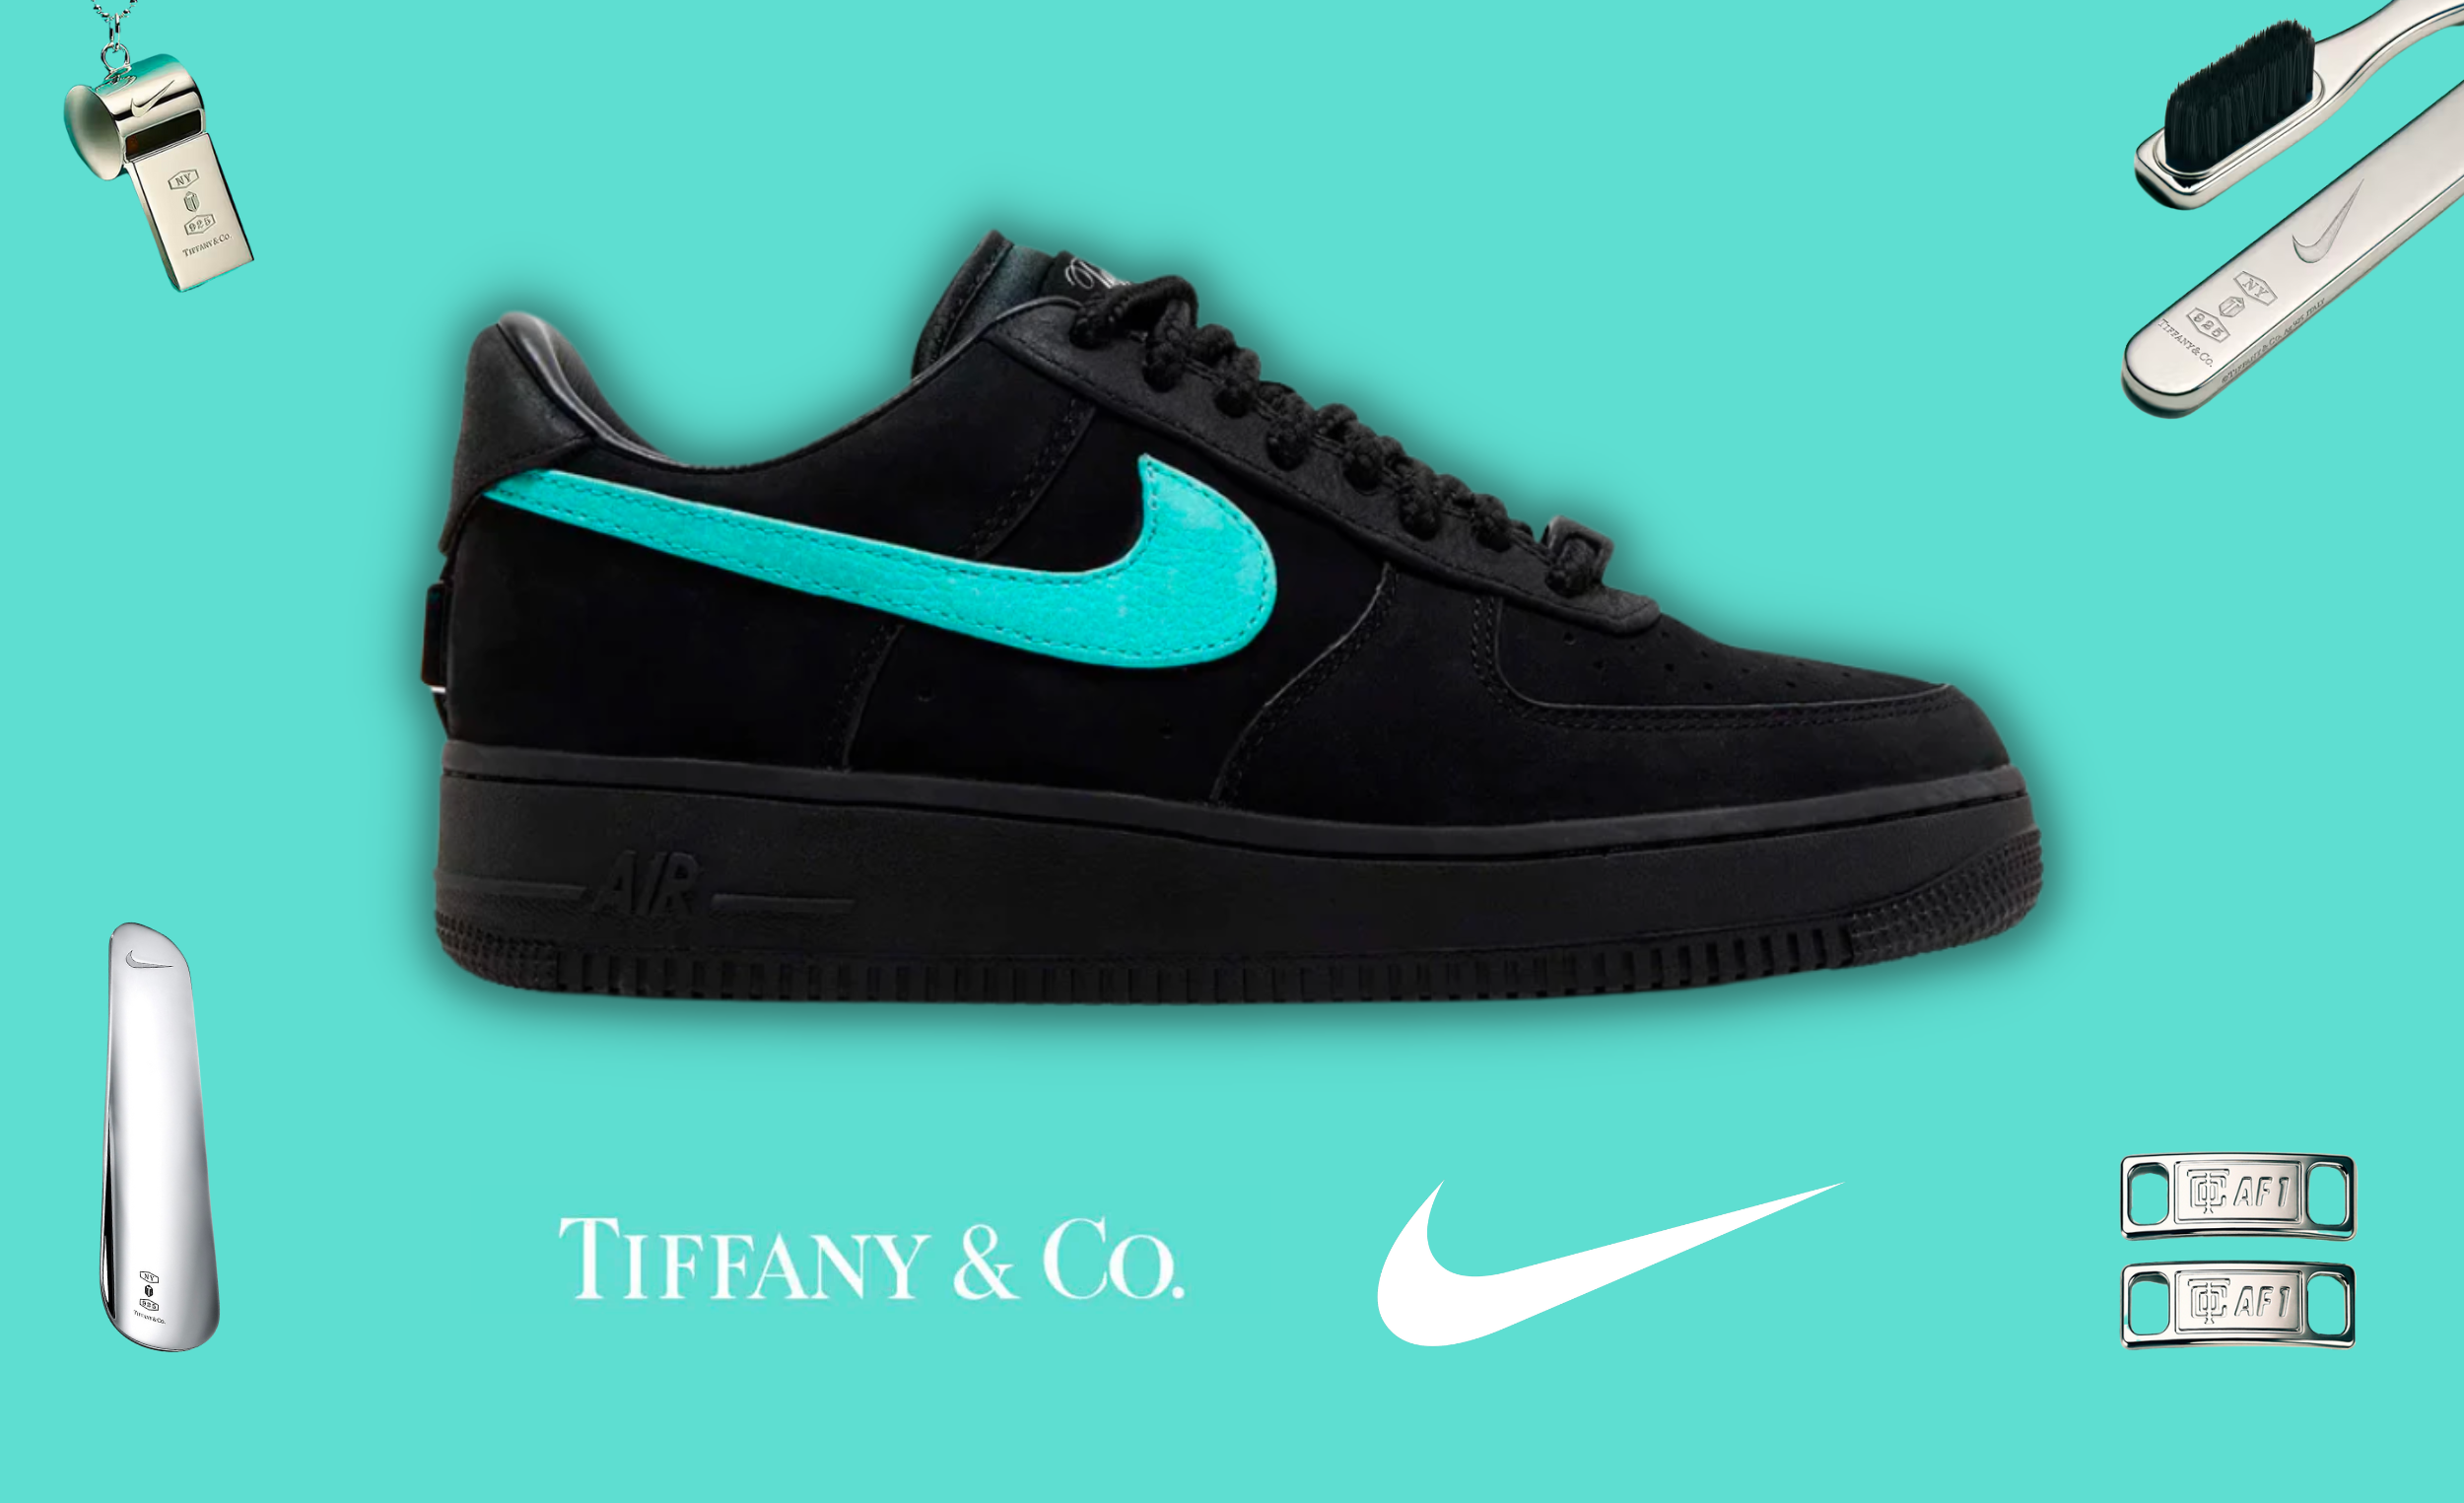 Fusionen af sport og luksus: Nike Tiffany & Co. Samarbejde